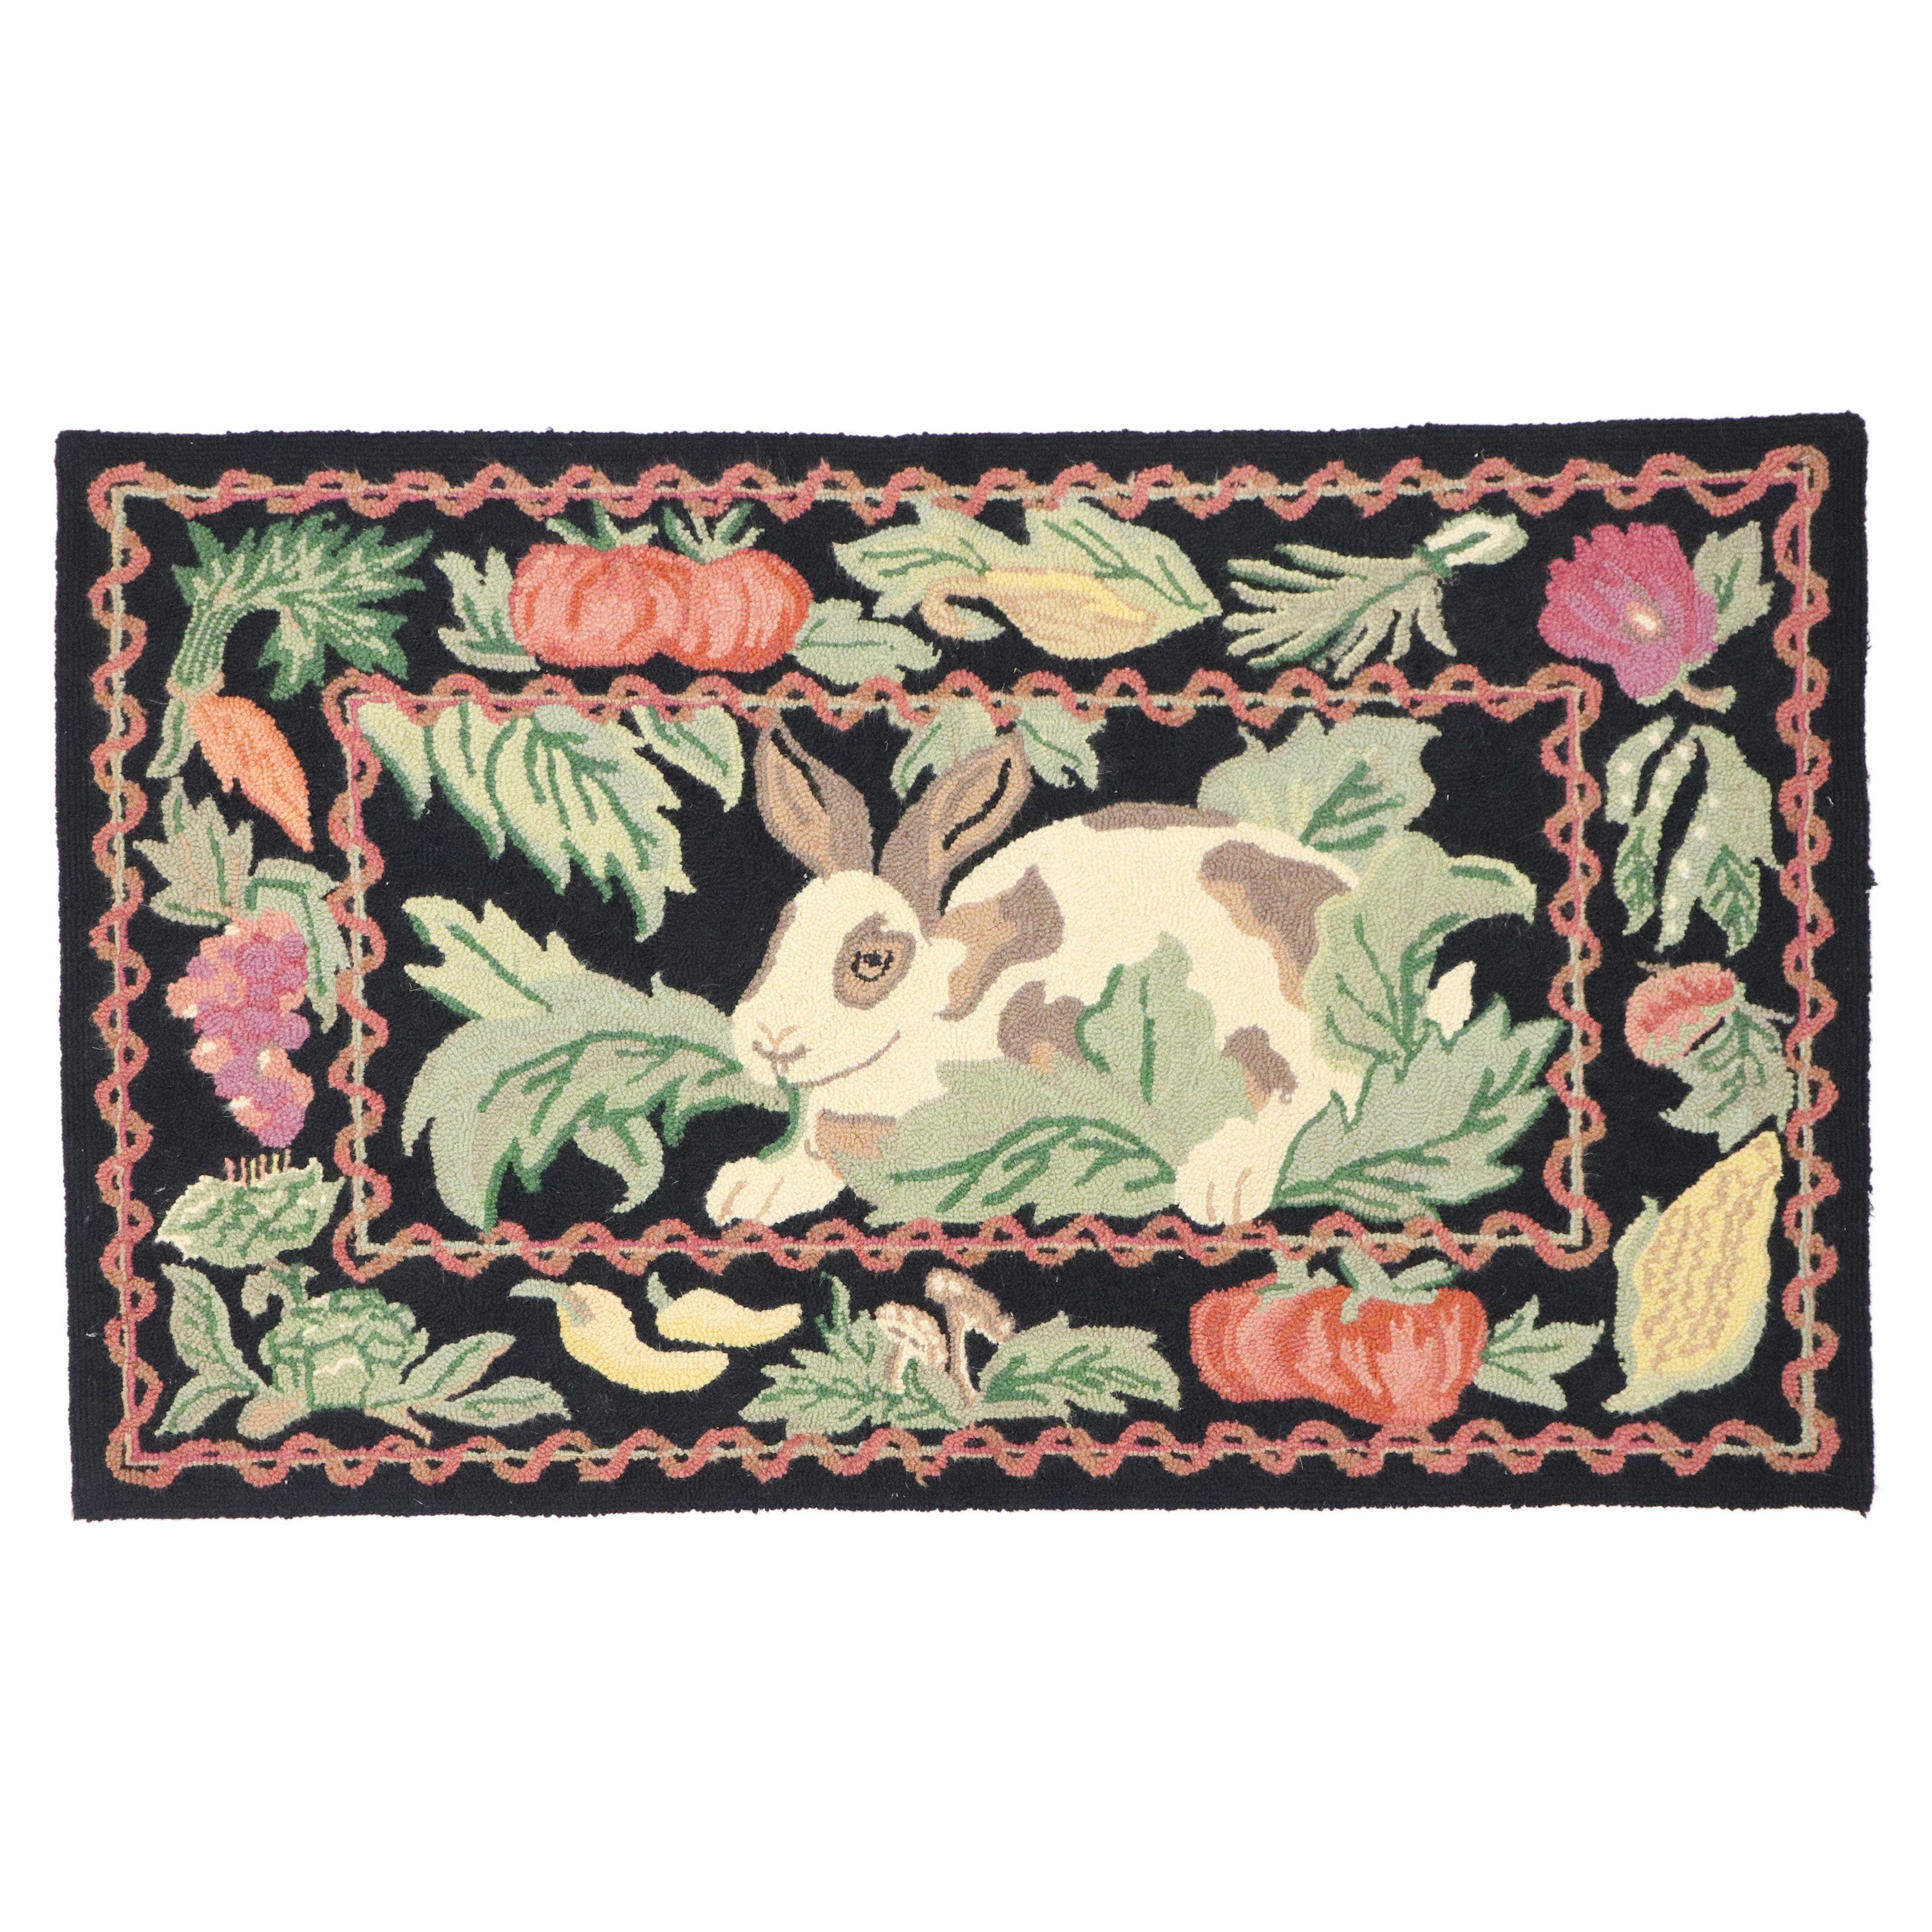 Garten-Kaninchen-Teppich mit Kapuze im französischen Landhausstil